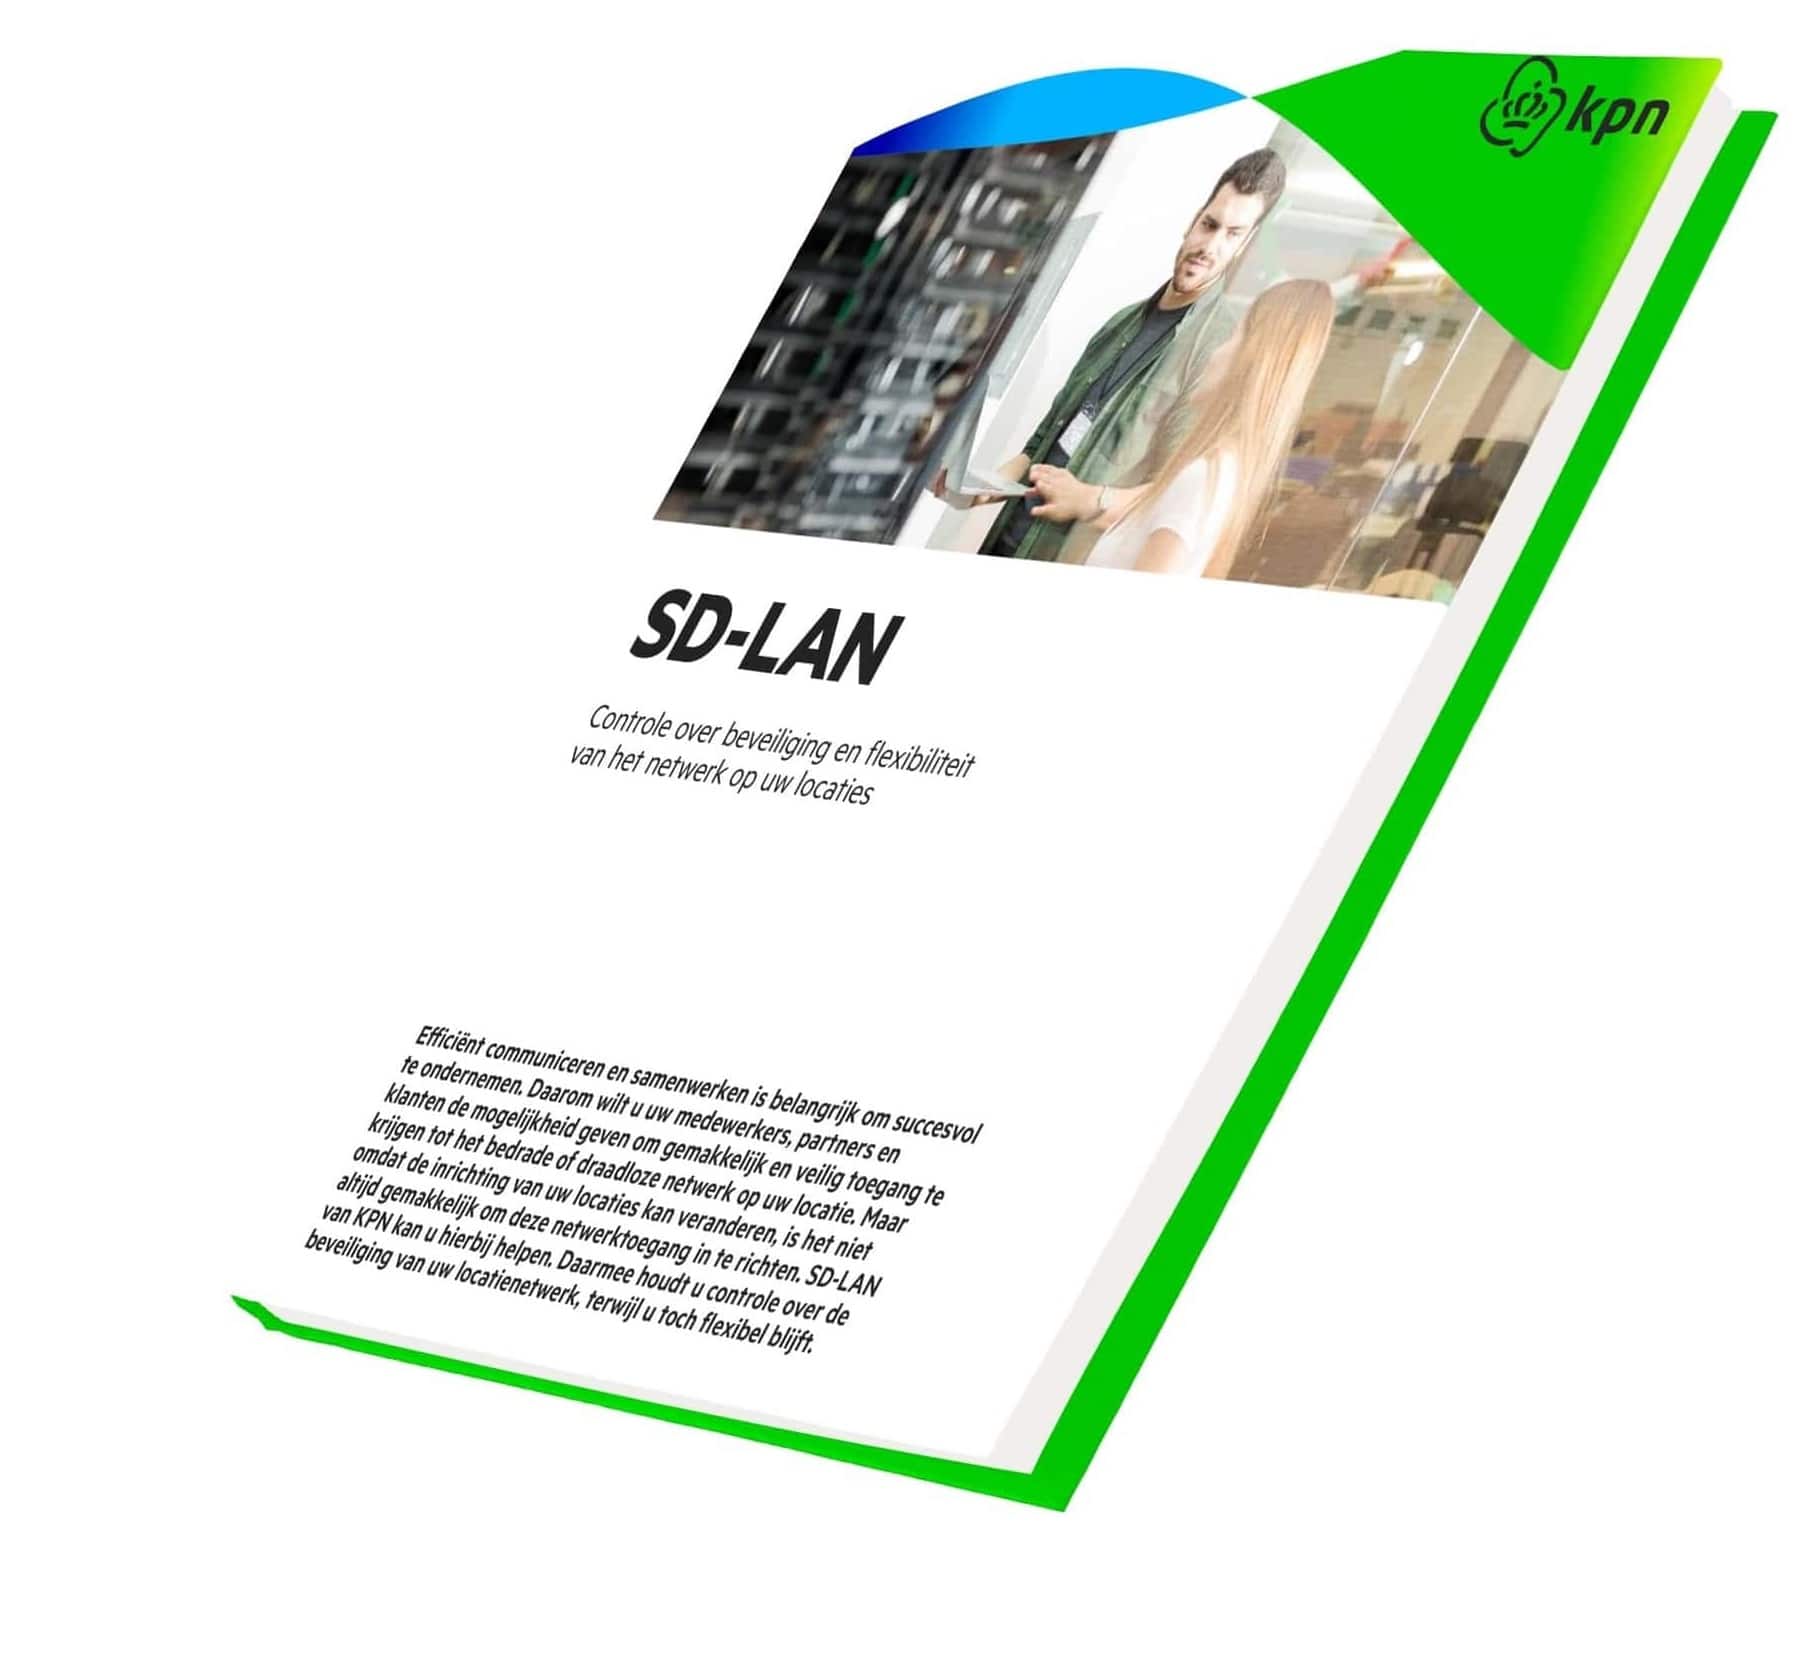 SD-LAN factsheet